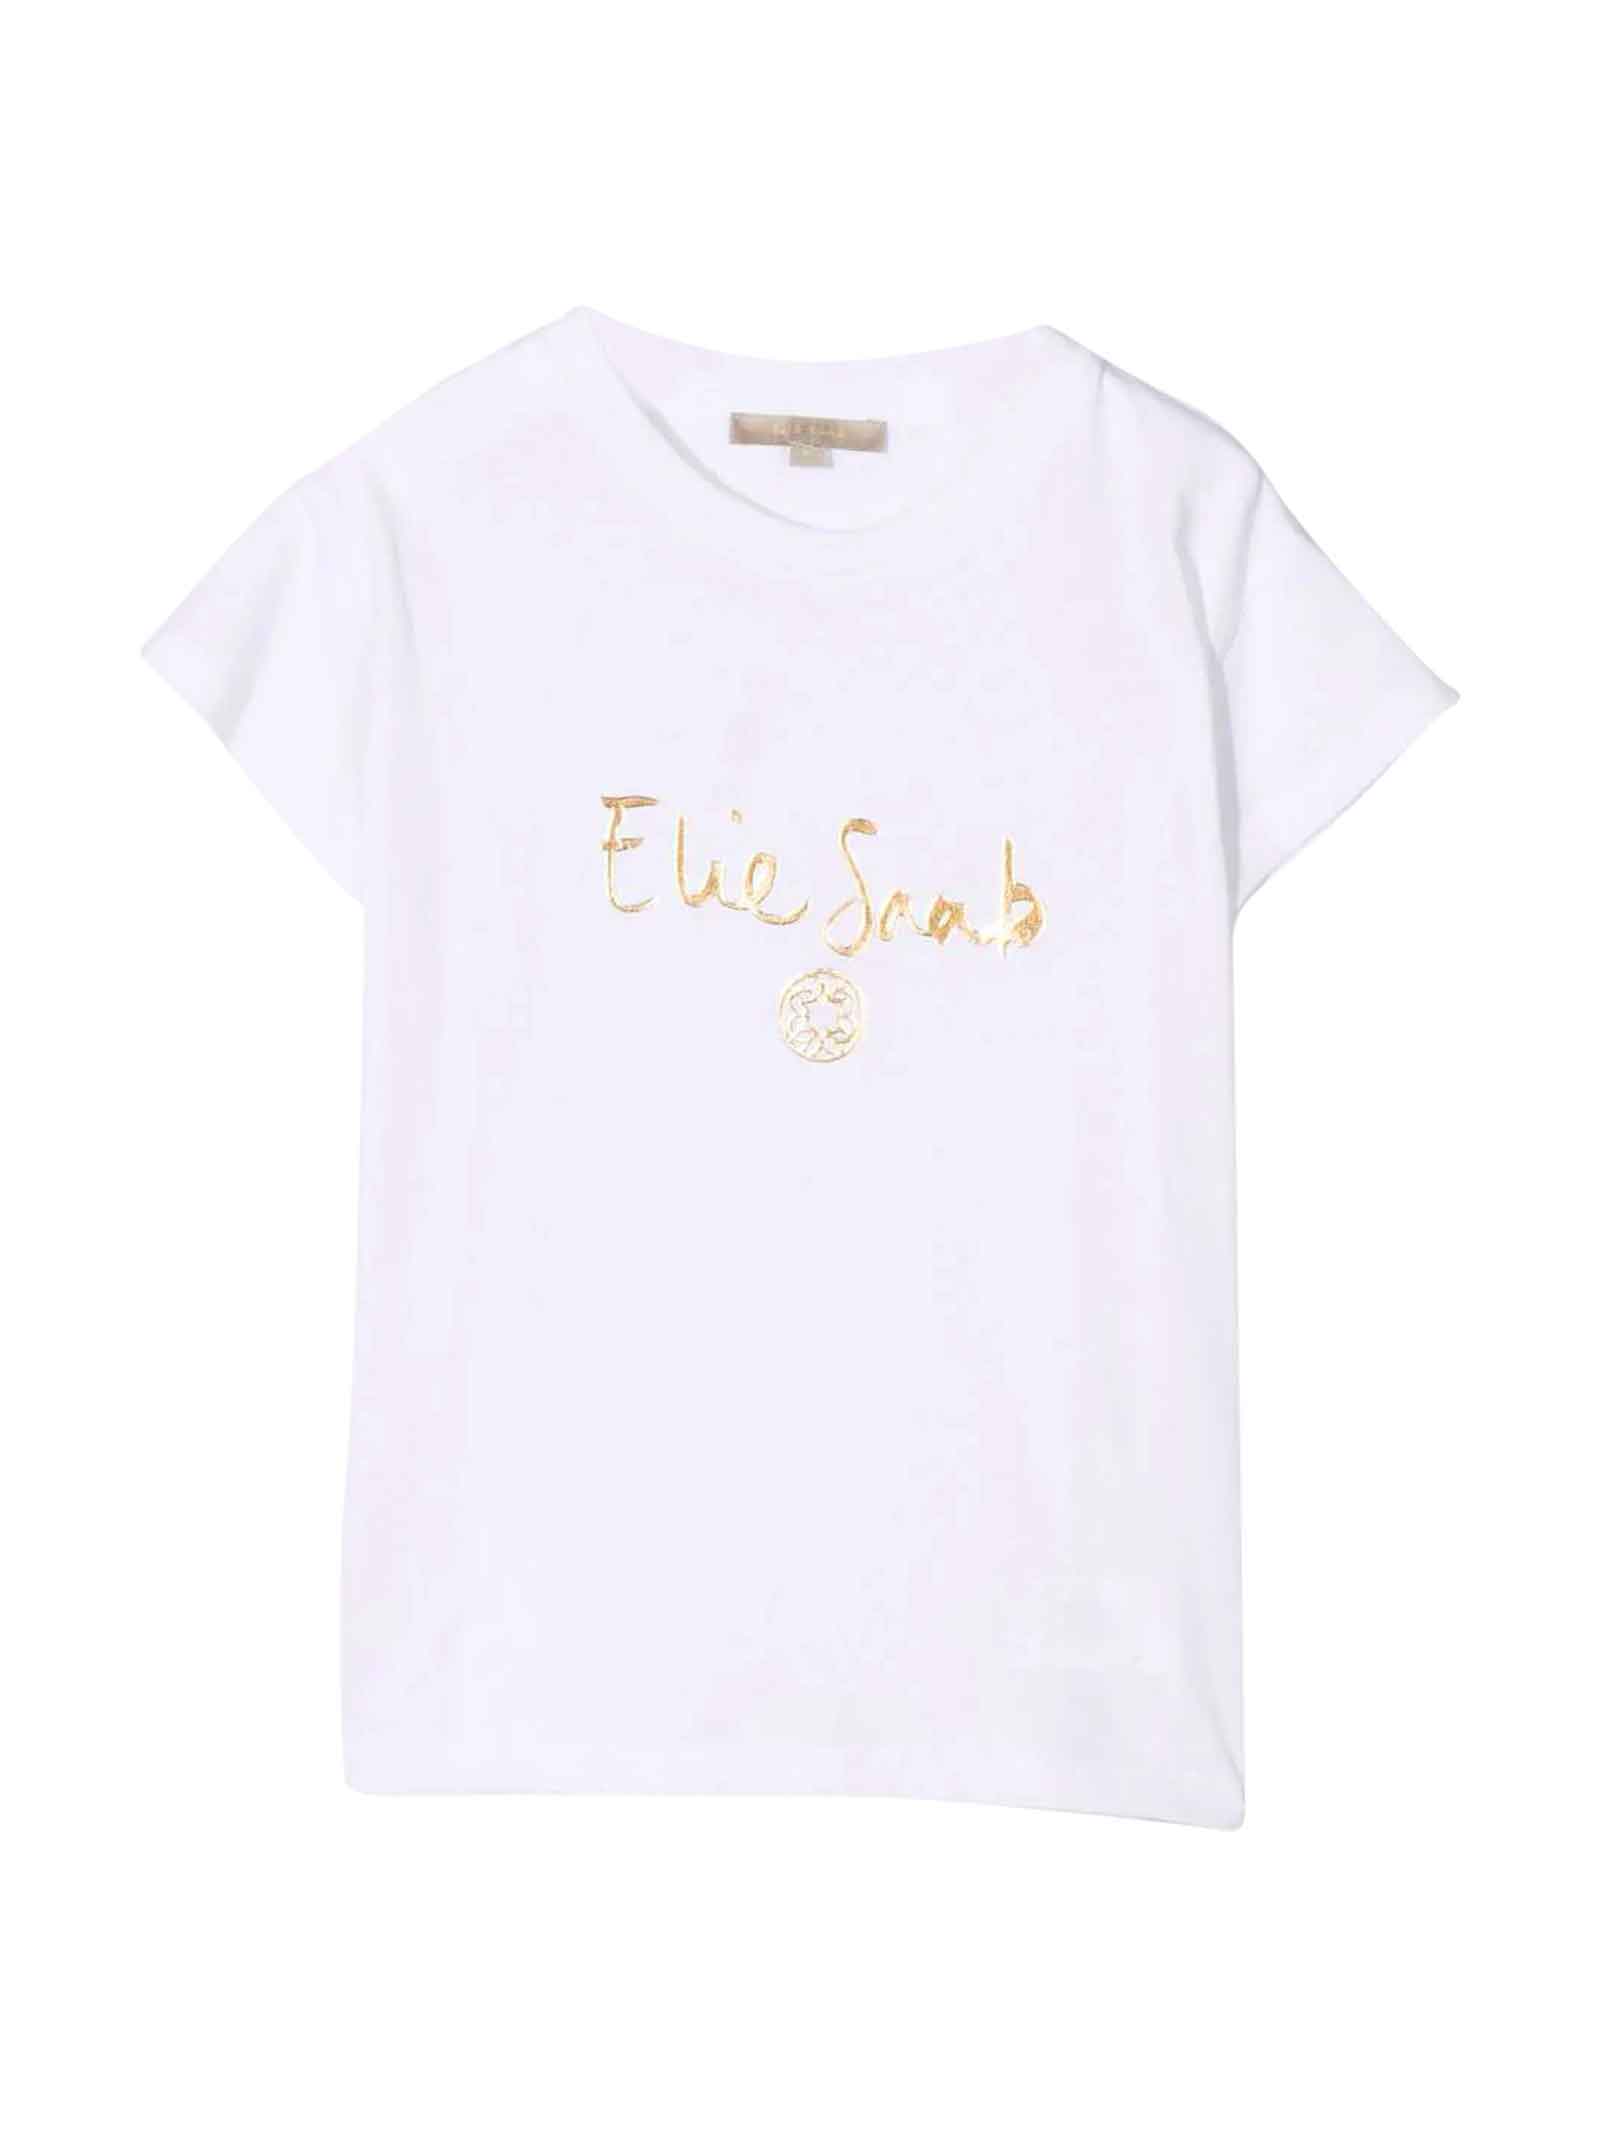 Elie Saab White Teen T-shirt